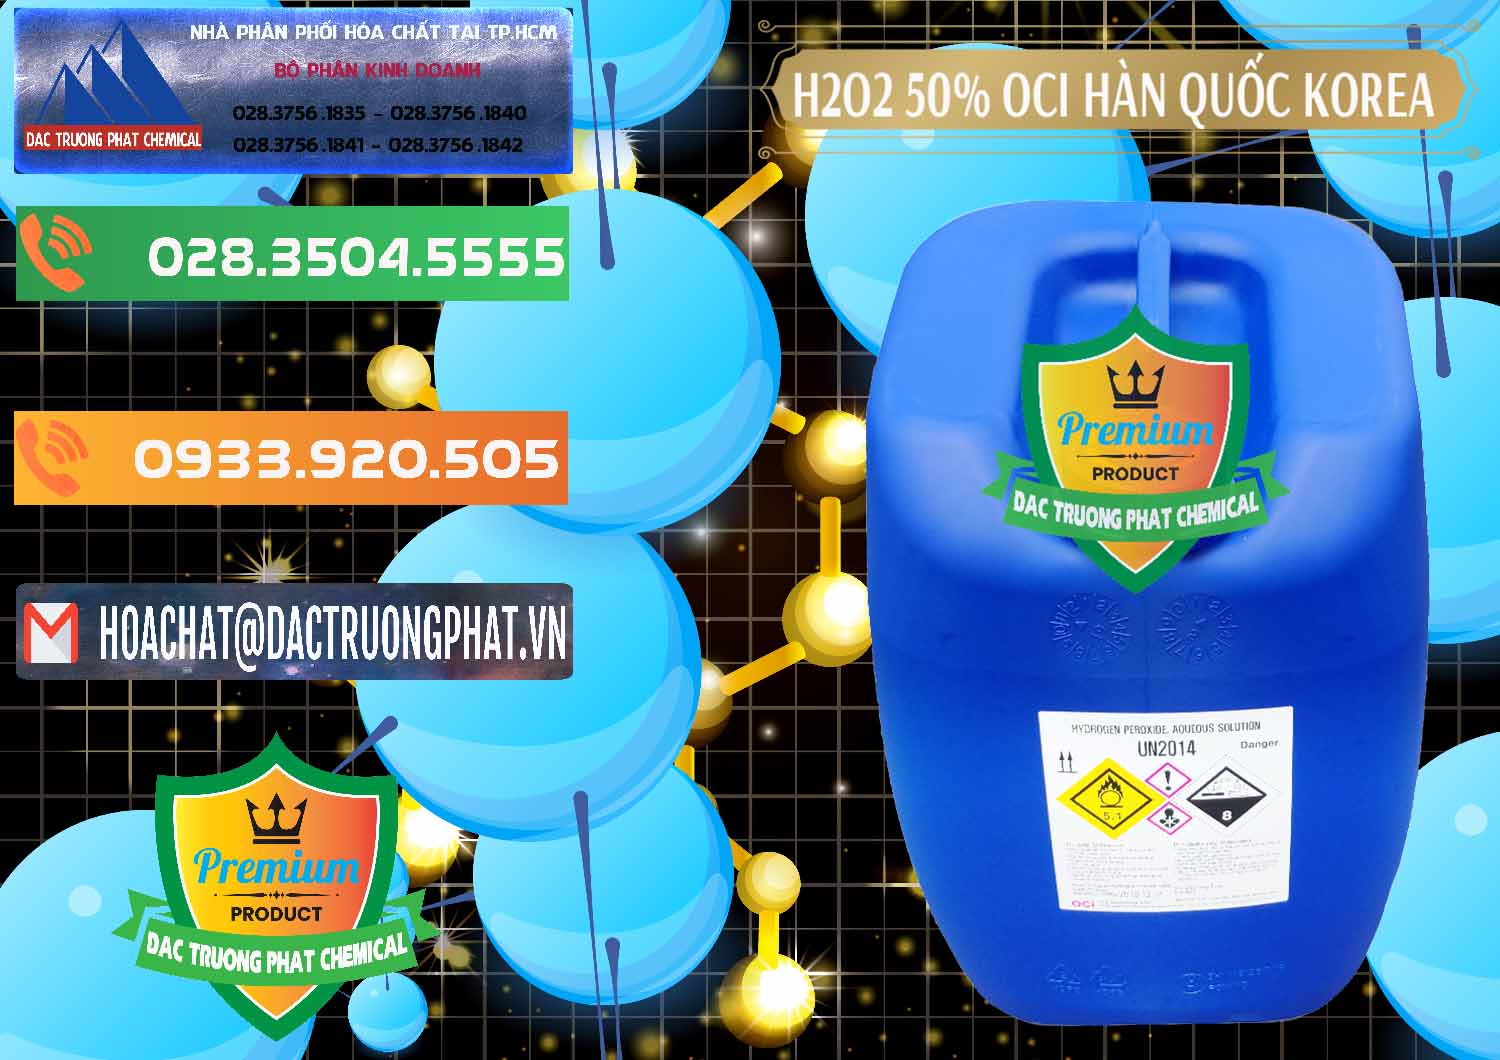 Nơi chuyên bán - phân phối H2O2 - Hydrogen Peroxide 50% OCI Hàn Quốc Korea - 0075 - Đơn vị kinh doanh & phân phối hóa chất tại TP.HCM - hoachatxulynuoc.com.vn